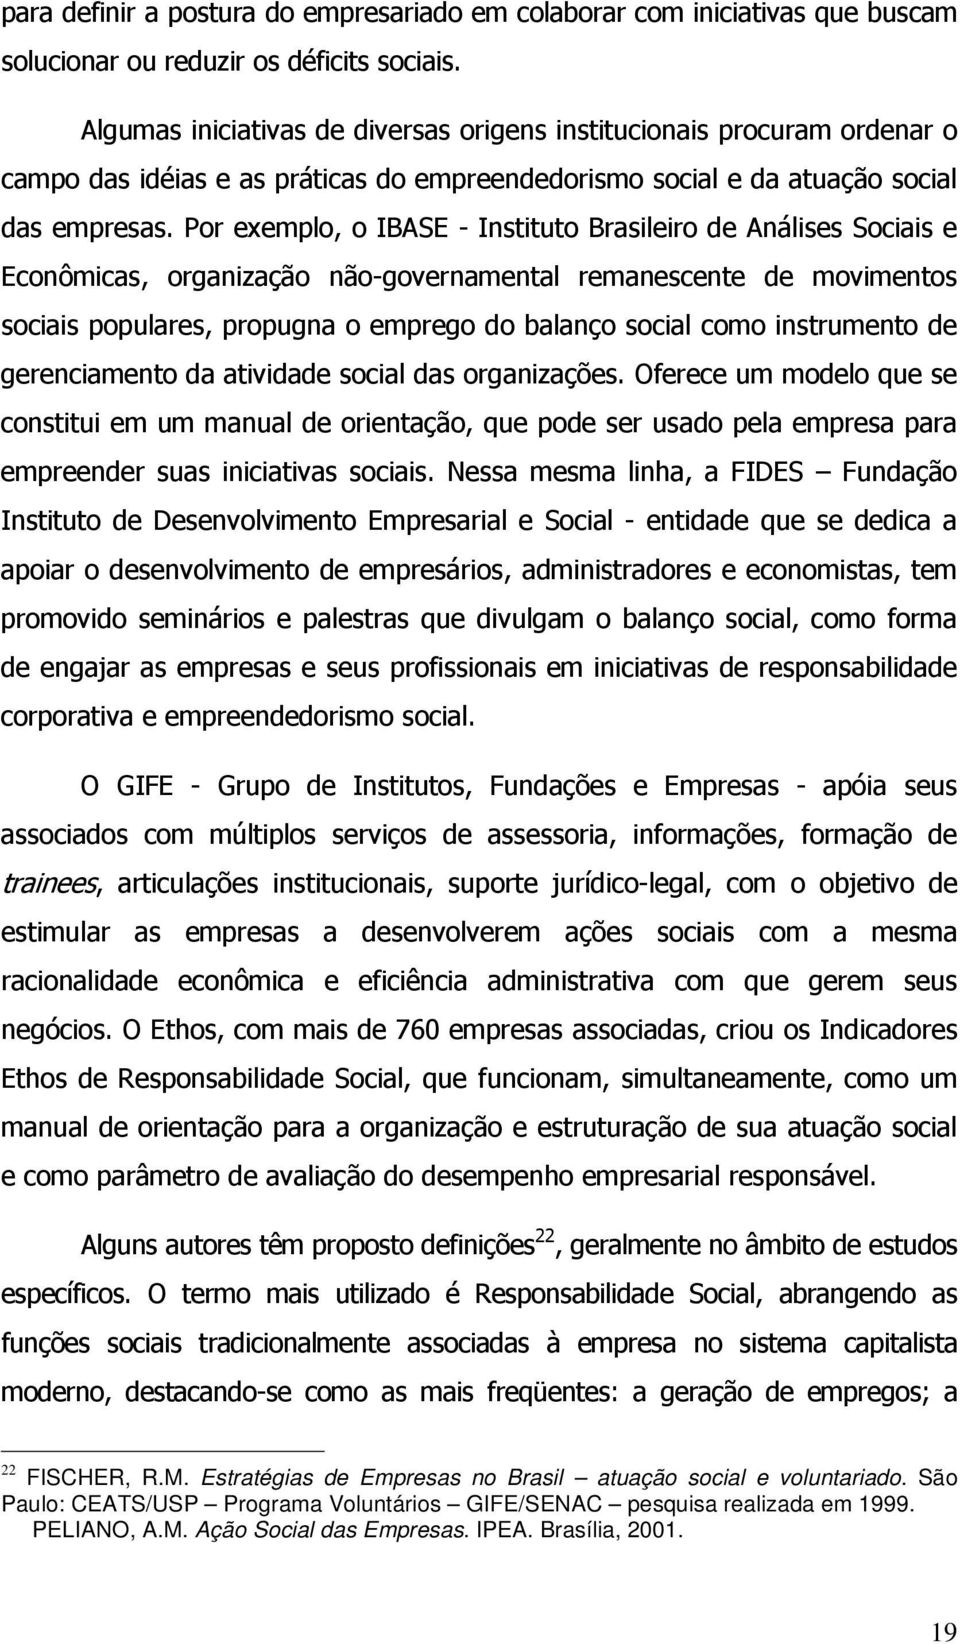 Estratégias de Empresas no Brasil atuação social e voluntariado.